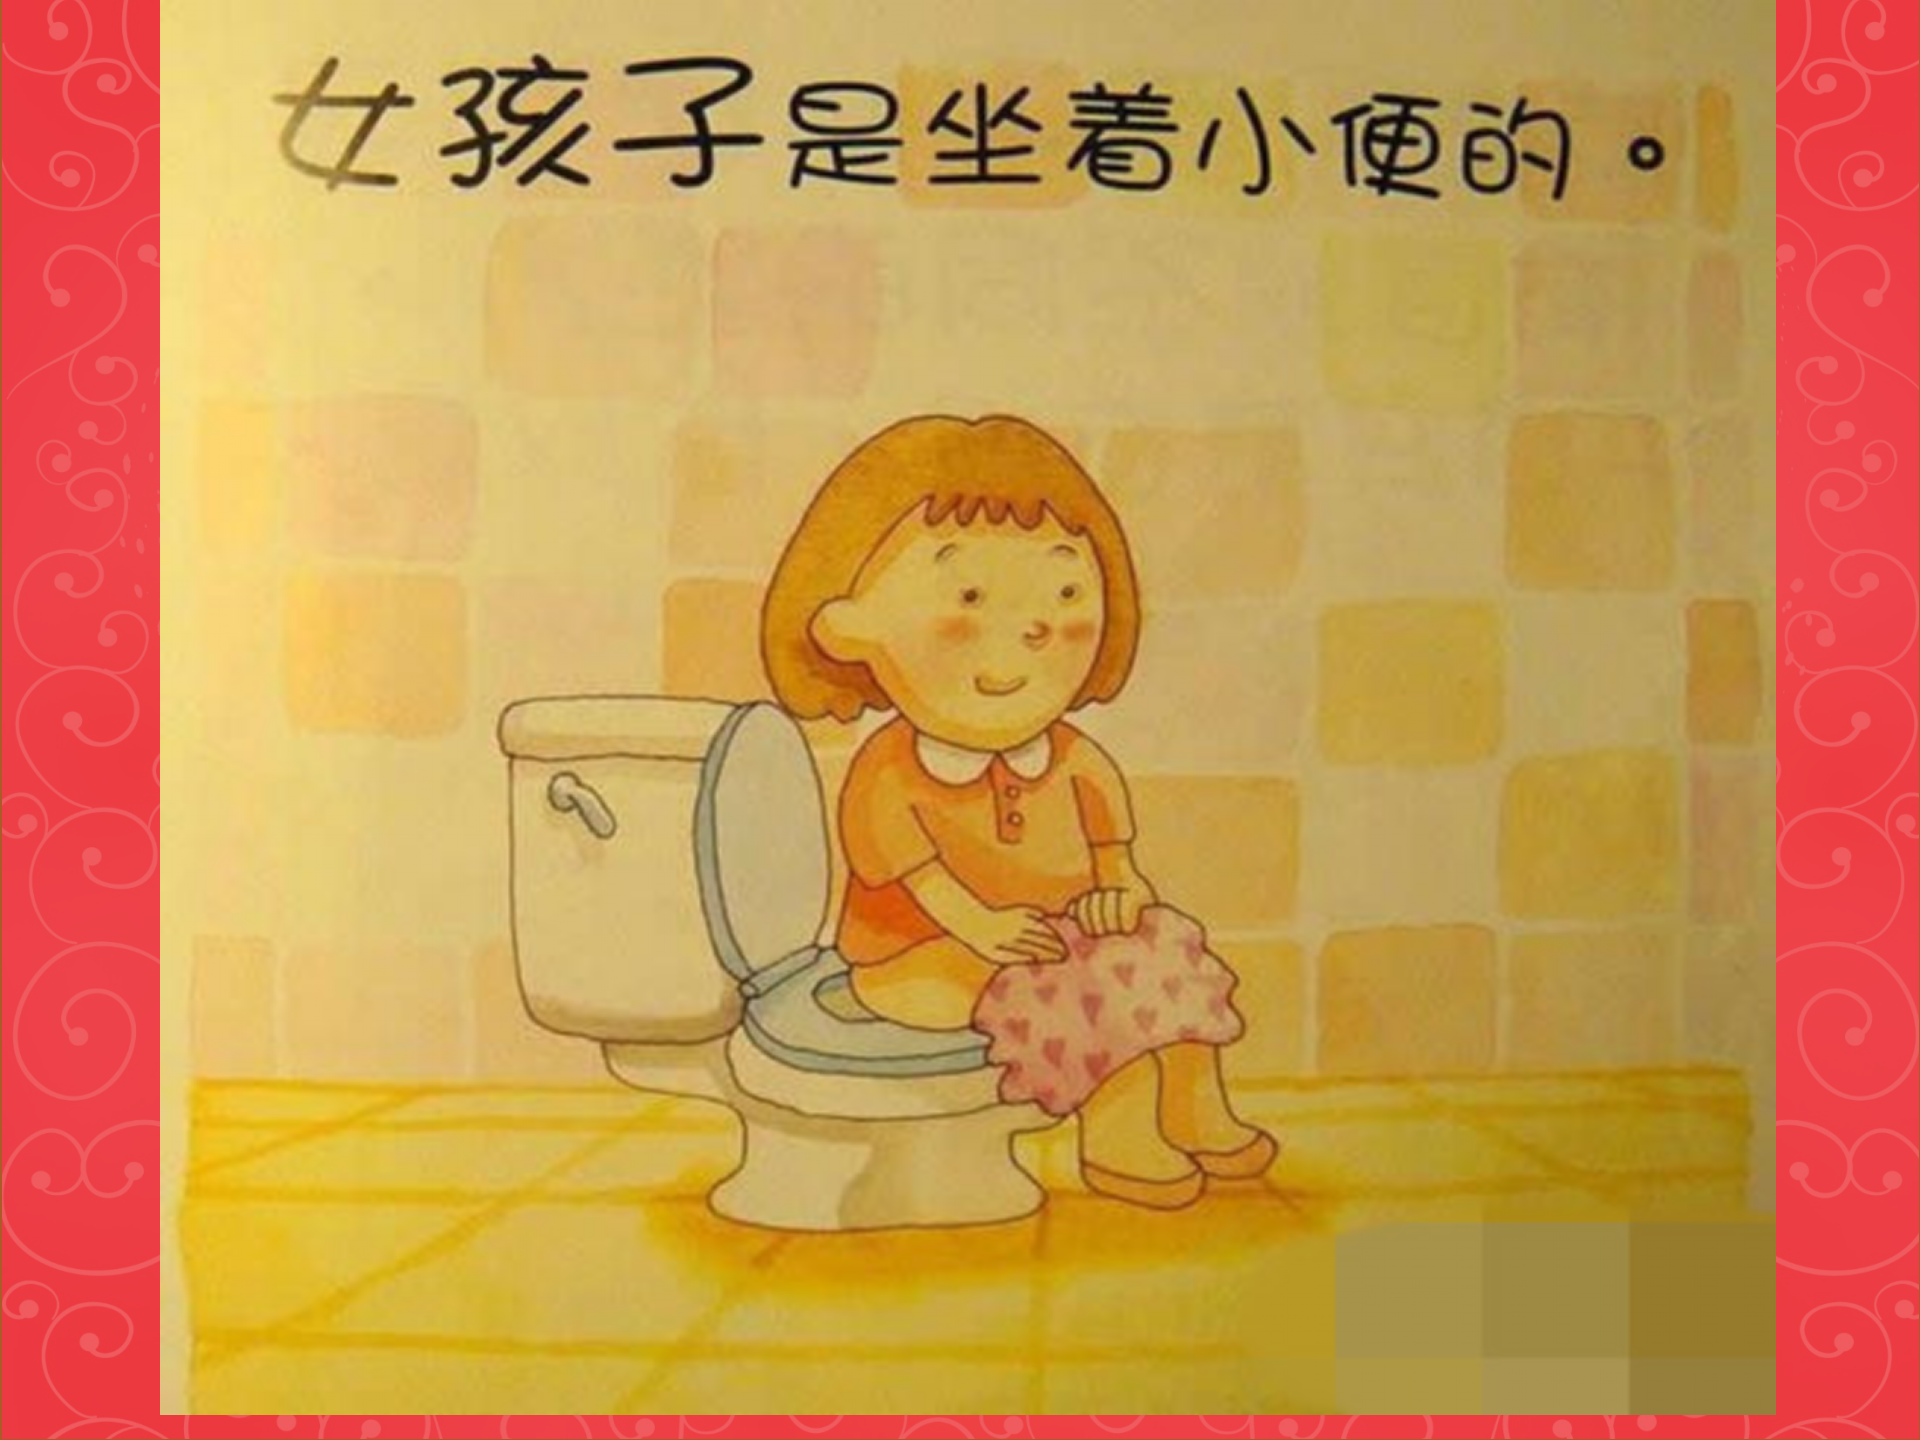 幼儿园女孩厕所小便-图库-五毛网